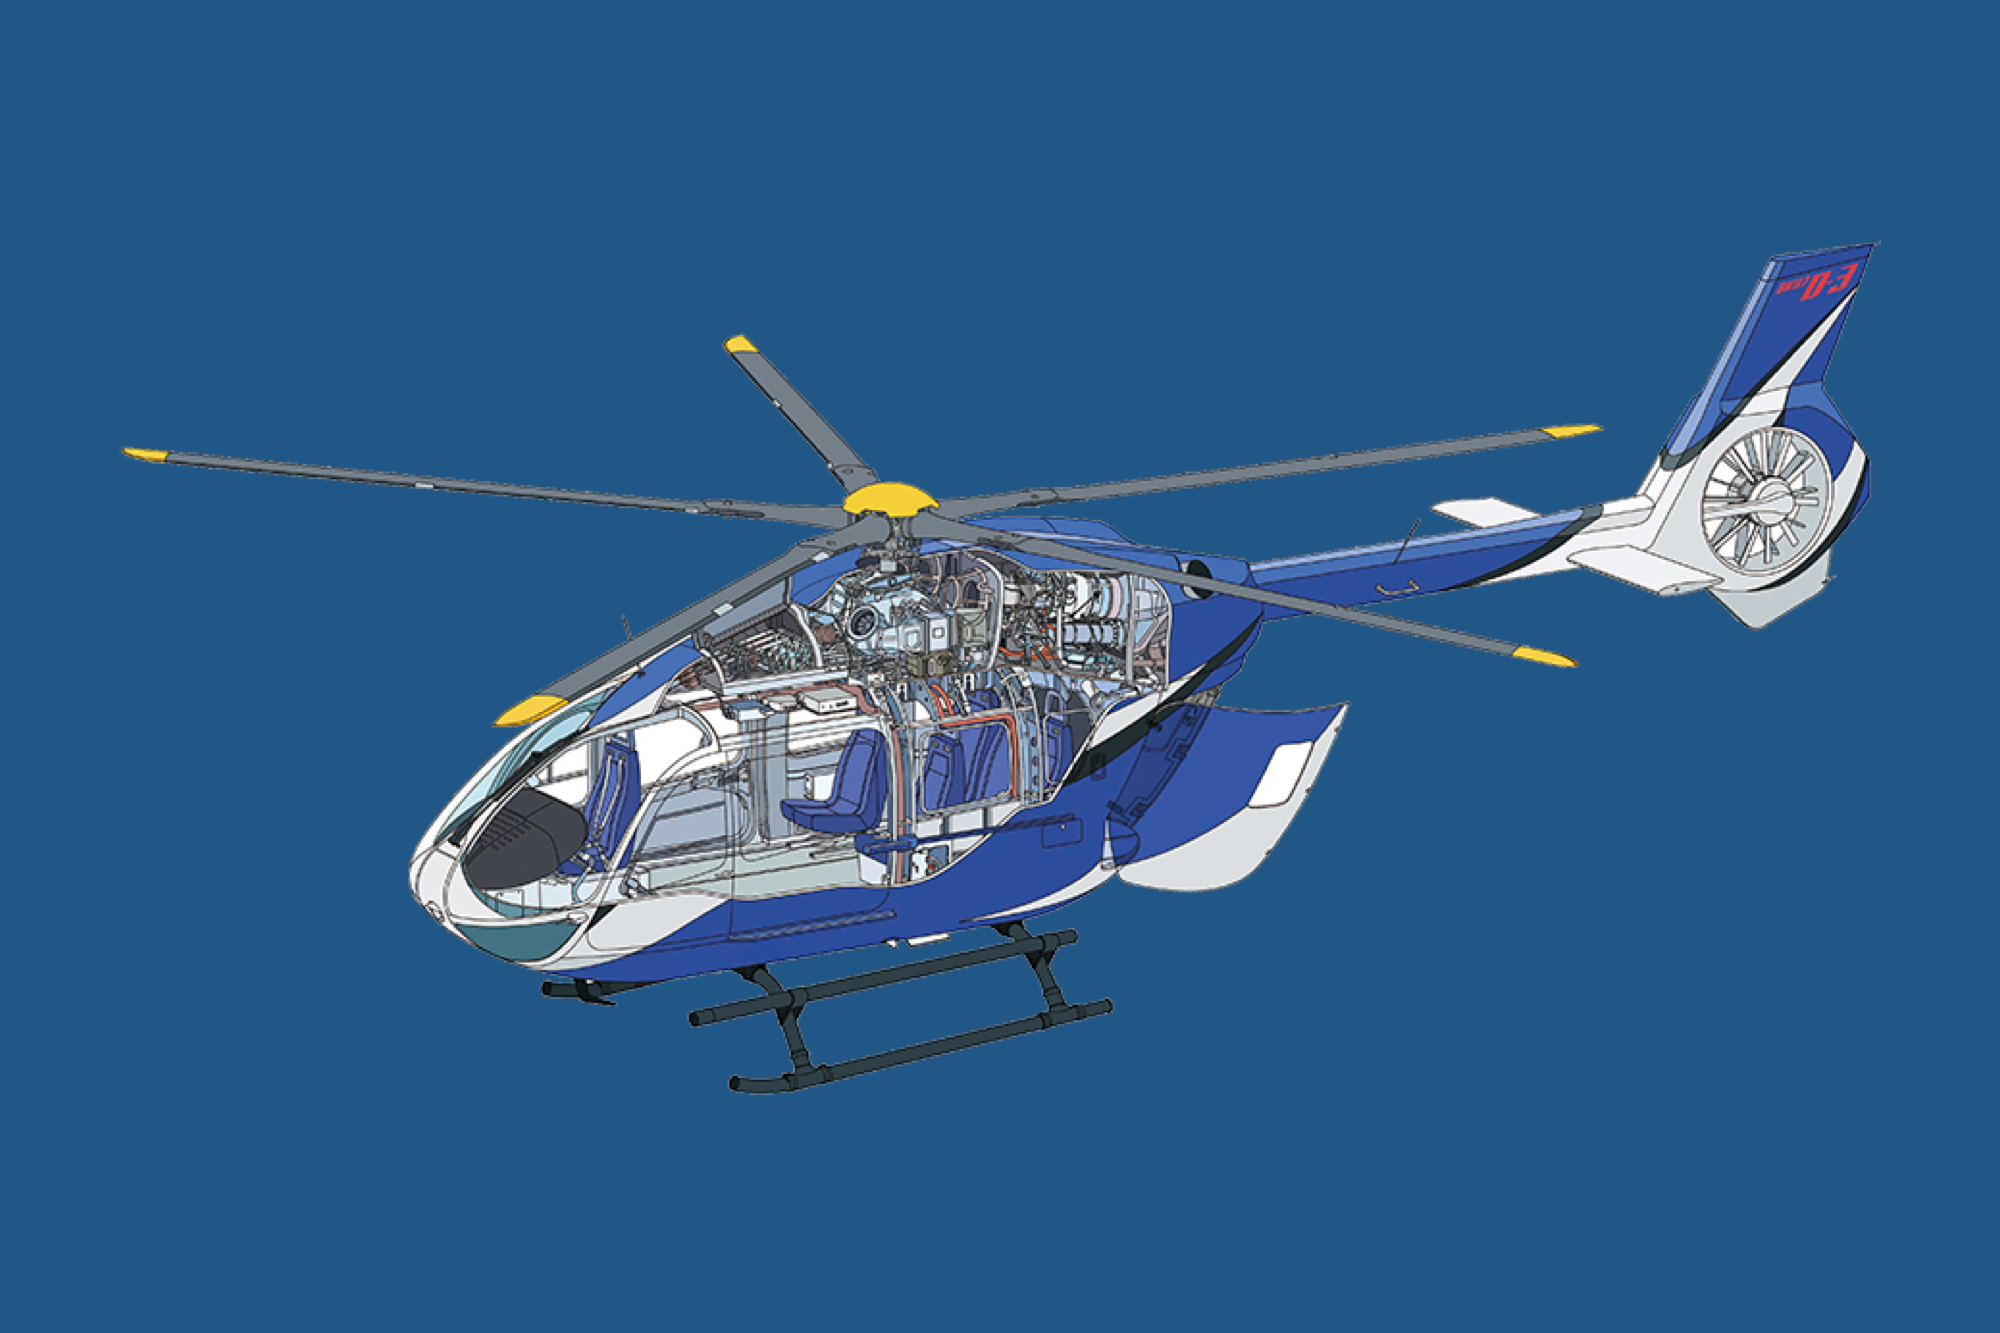 高機能多用途双発ヘリコプター Bk117 D 3型 Answers アンサーズ つぎの社会に向かうkawasakiのこたえ 川崎重工業